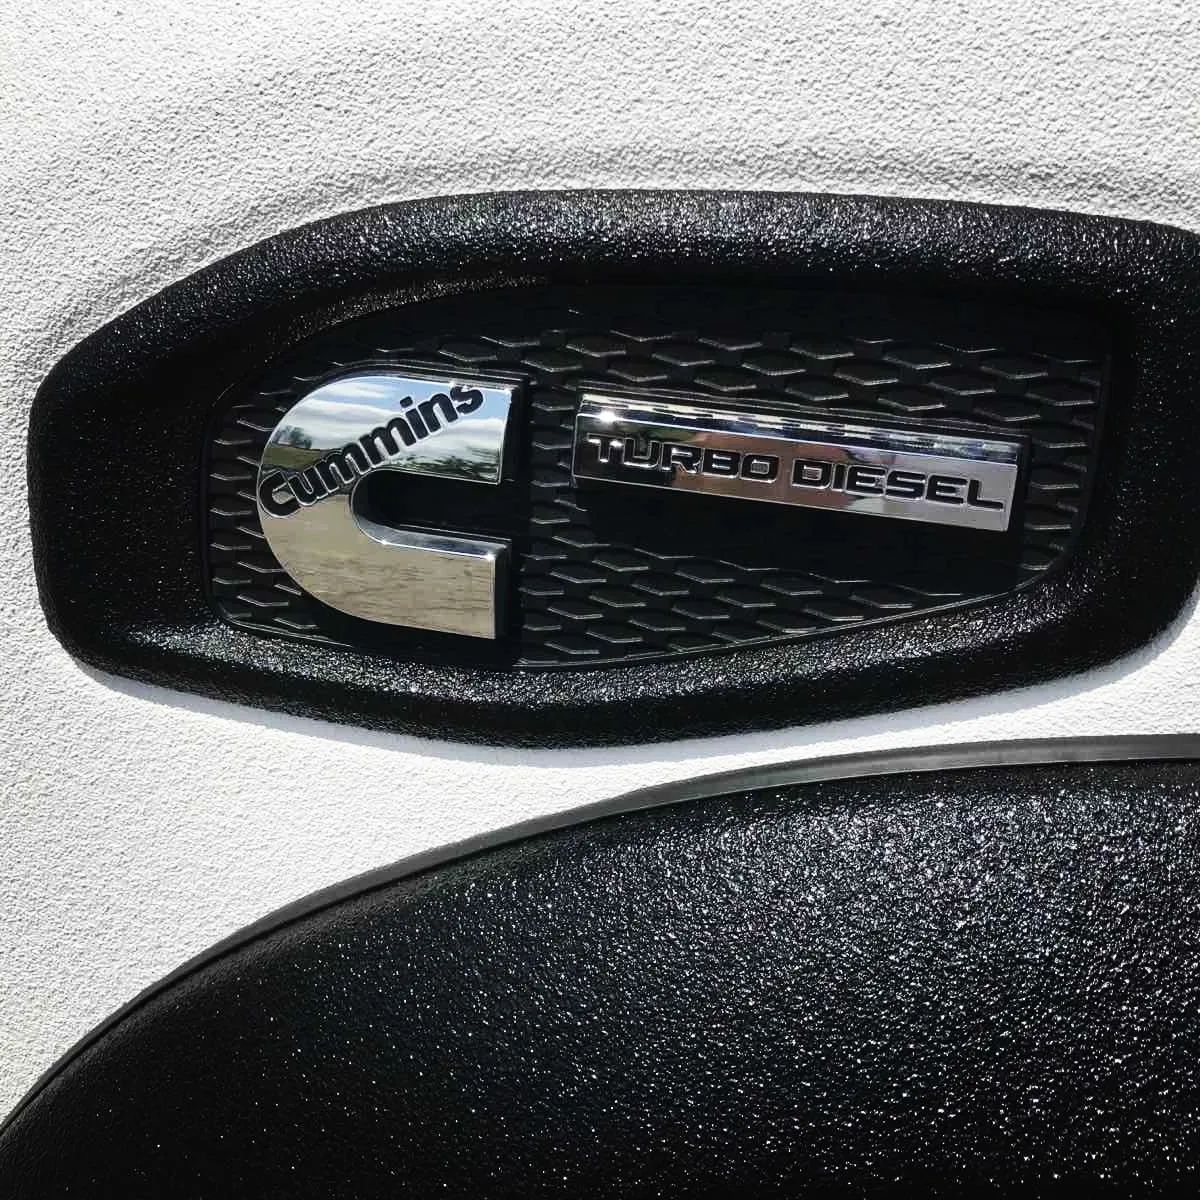 нещодавно закінчений проект із нанесення захисного покриття Line-X на кузов Nissan Titan XD